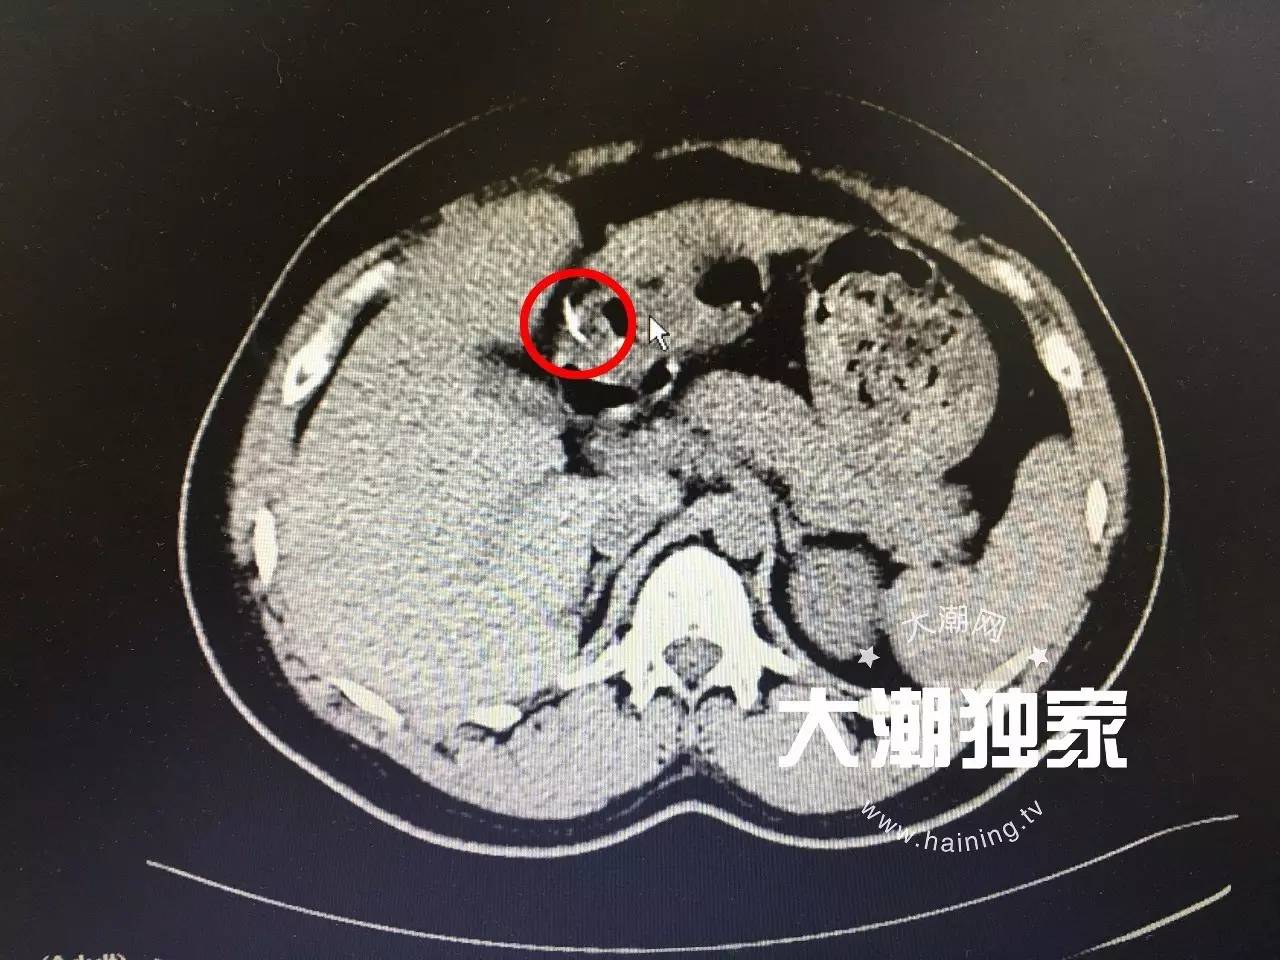 闻医生建议她先去做一个ct扫描,检查结果竟然是胃穿孔!